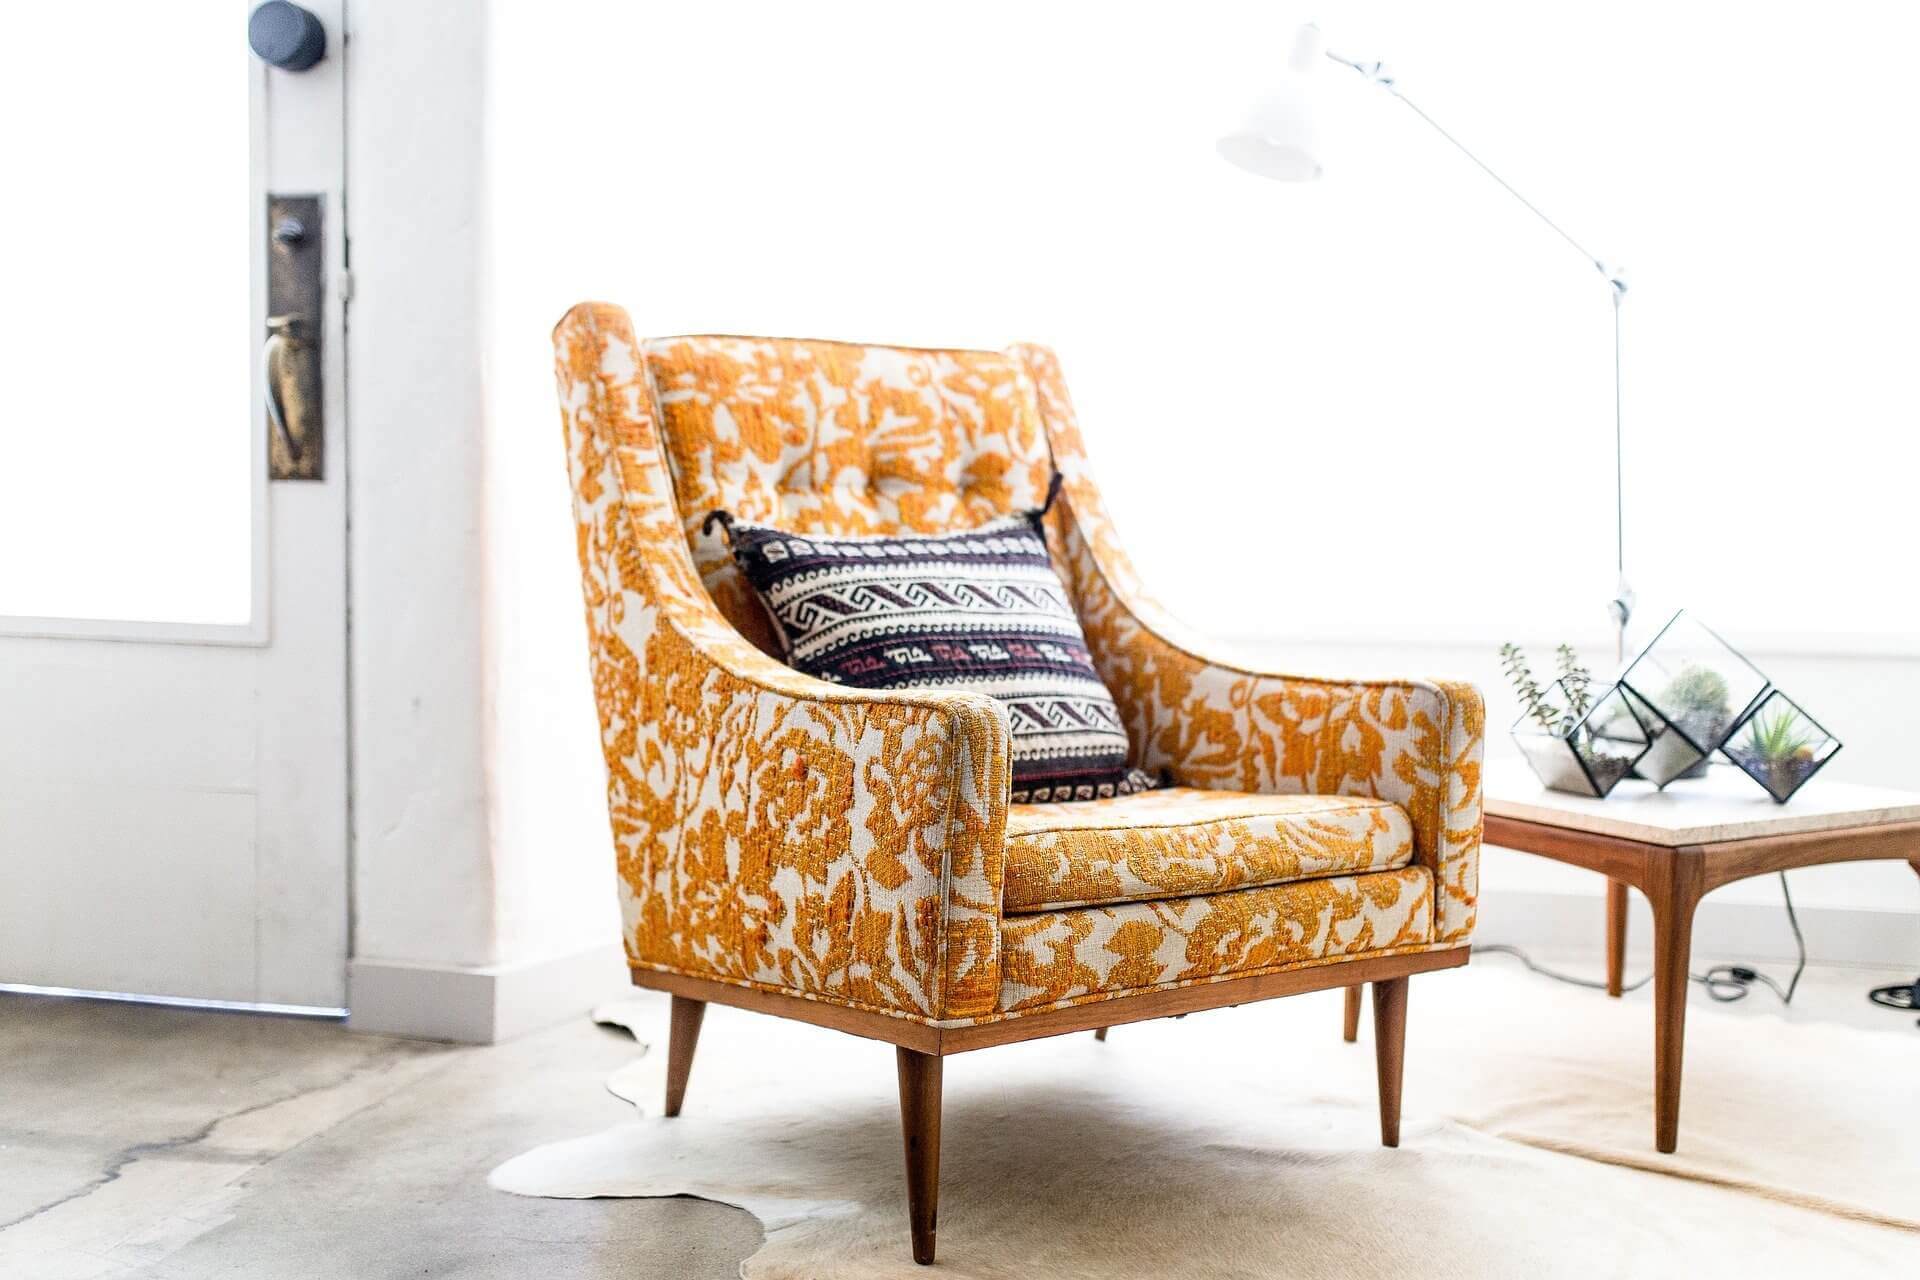 Möbel wie Sessel und Sofas kannst du ganz einfach selber polstern mit PUR und Kaltschaum